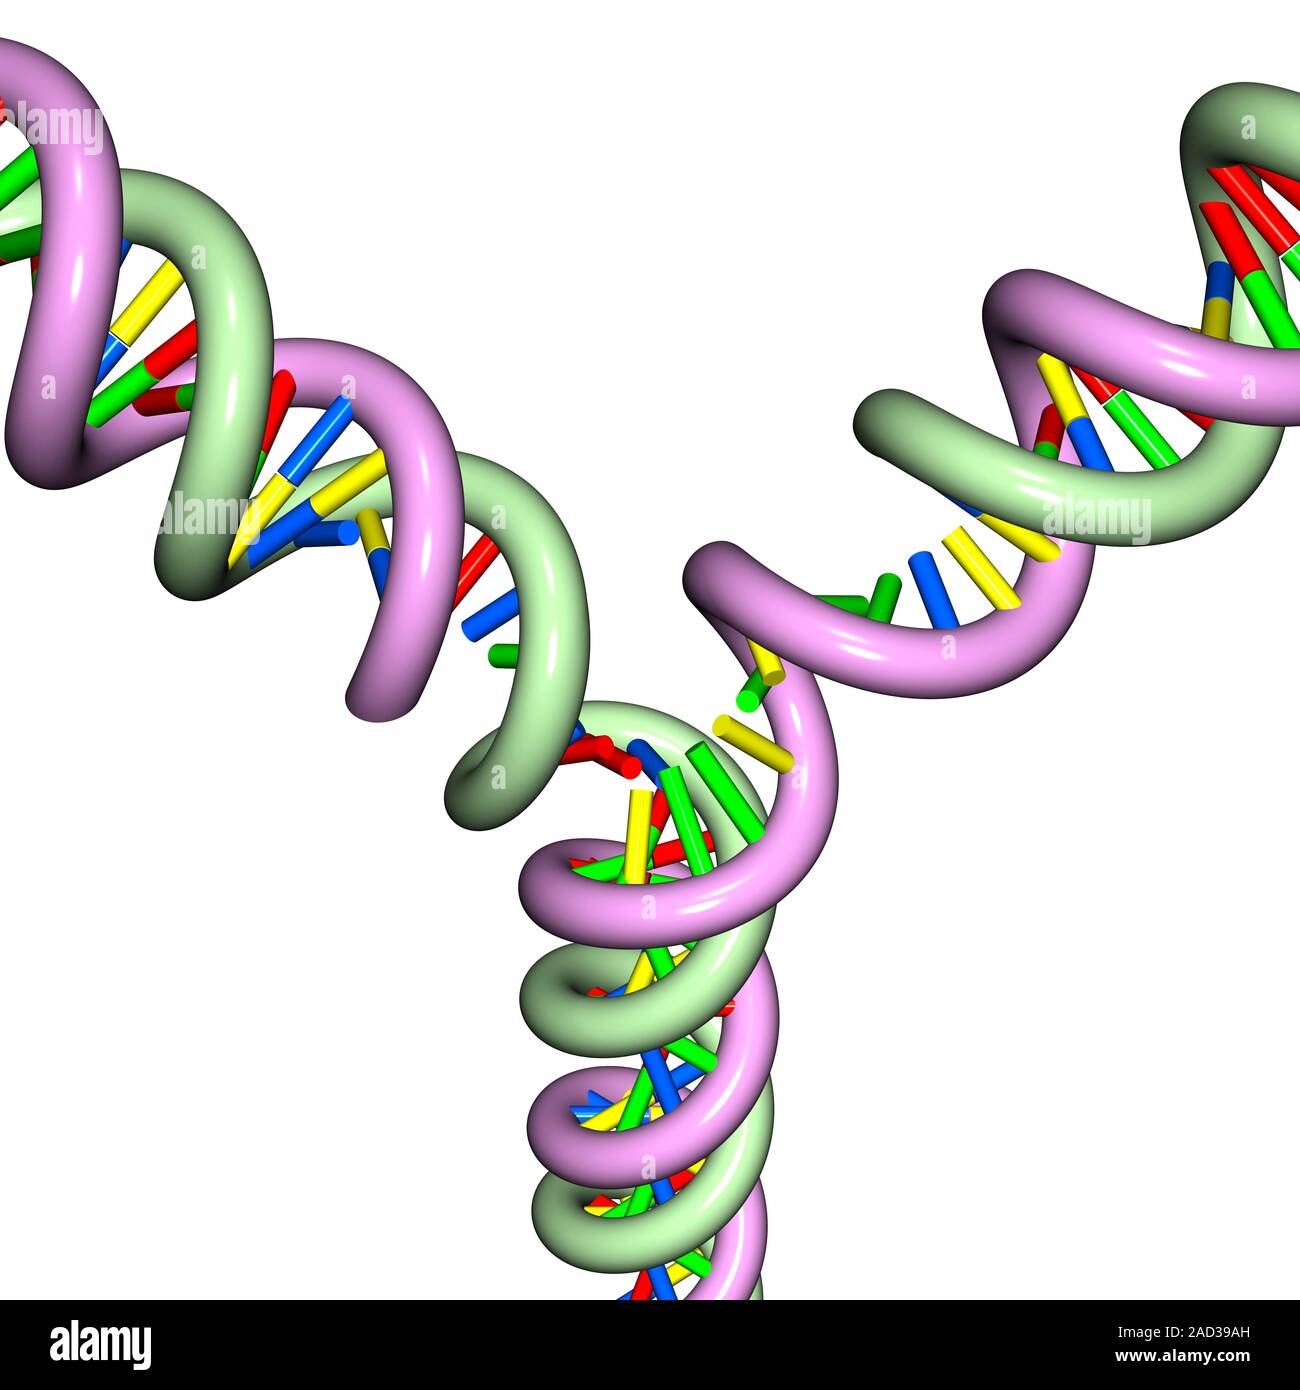 Удваивается молекула днк. Иллюстрация репликации ДНК. Репликация молекулы ДНК. Дупликация ДНК. Удвоение молекулы ДНК.